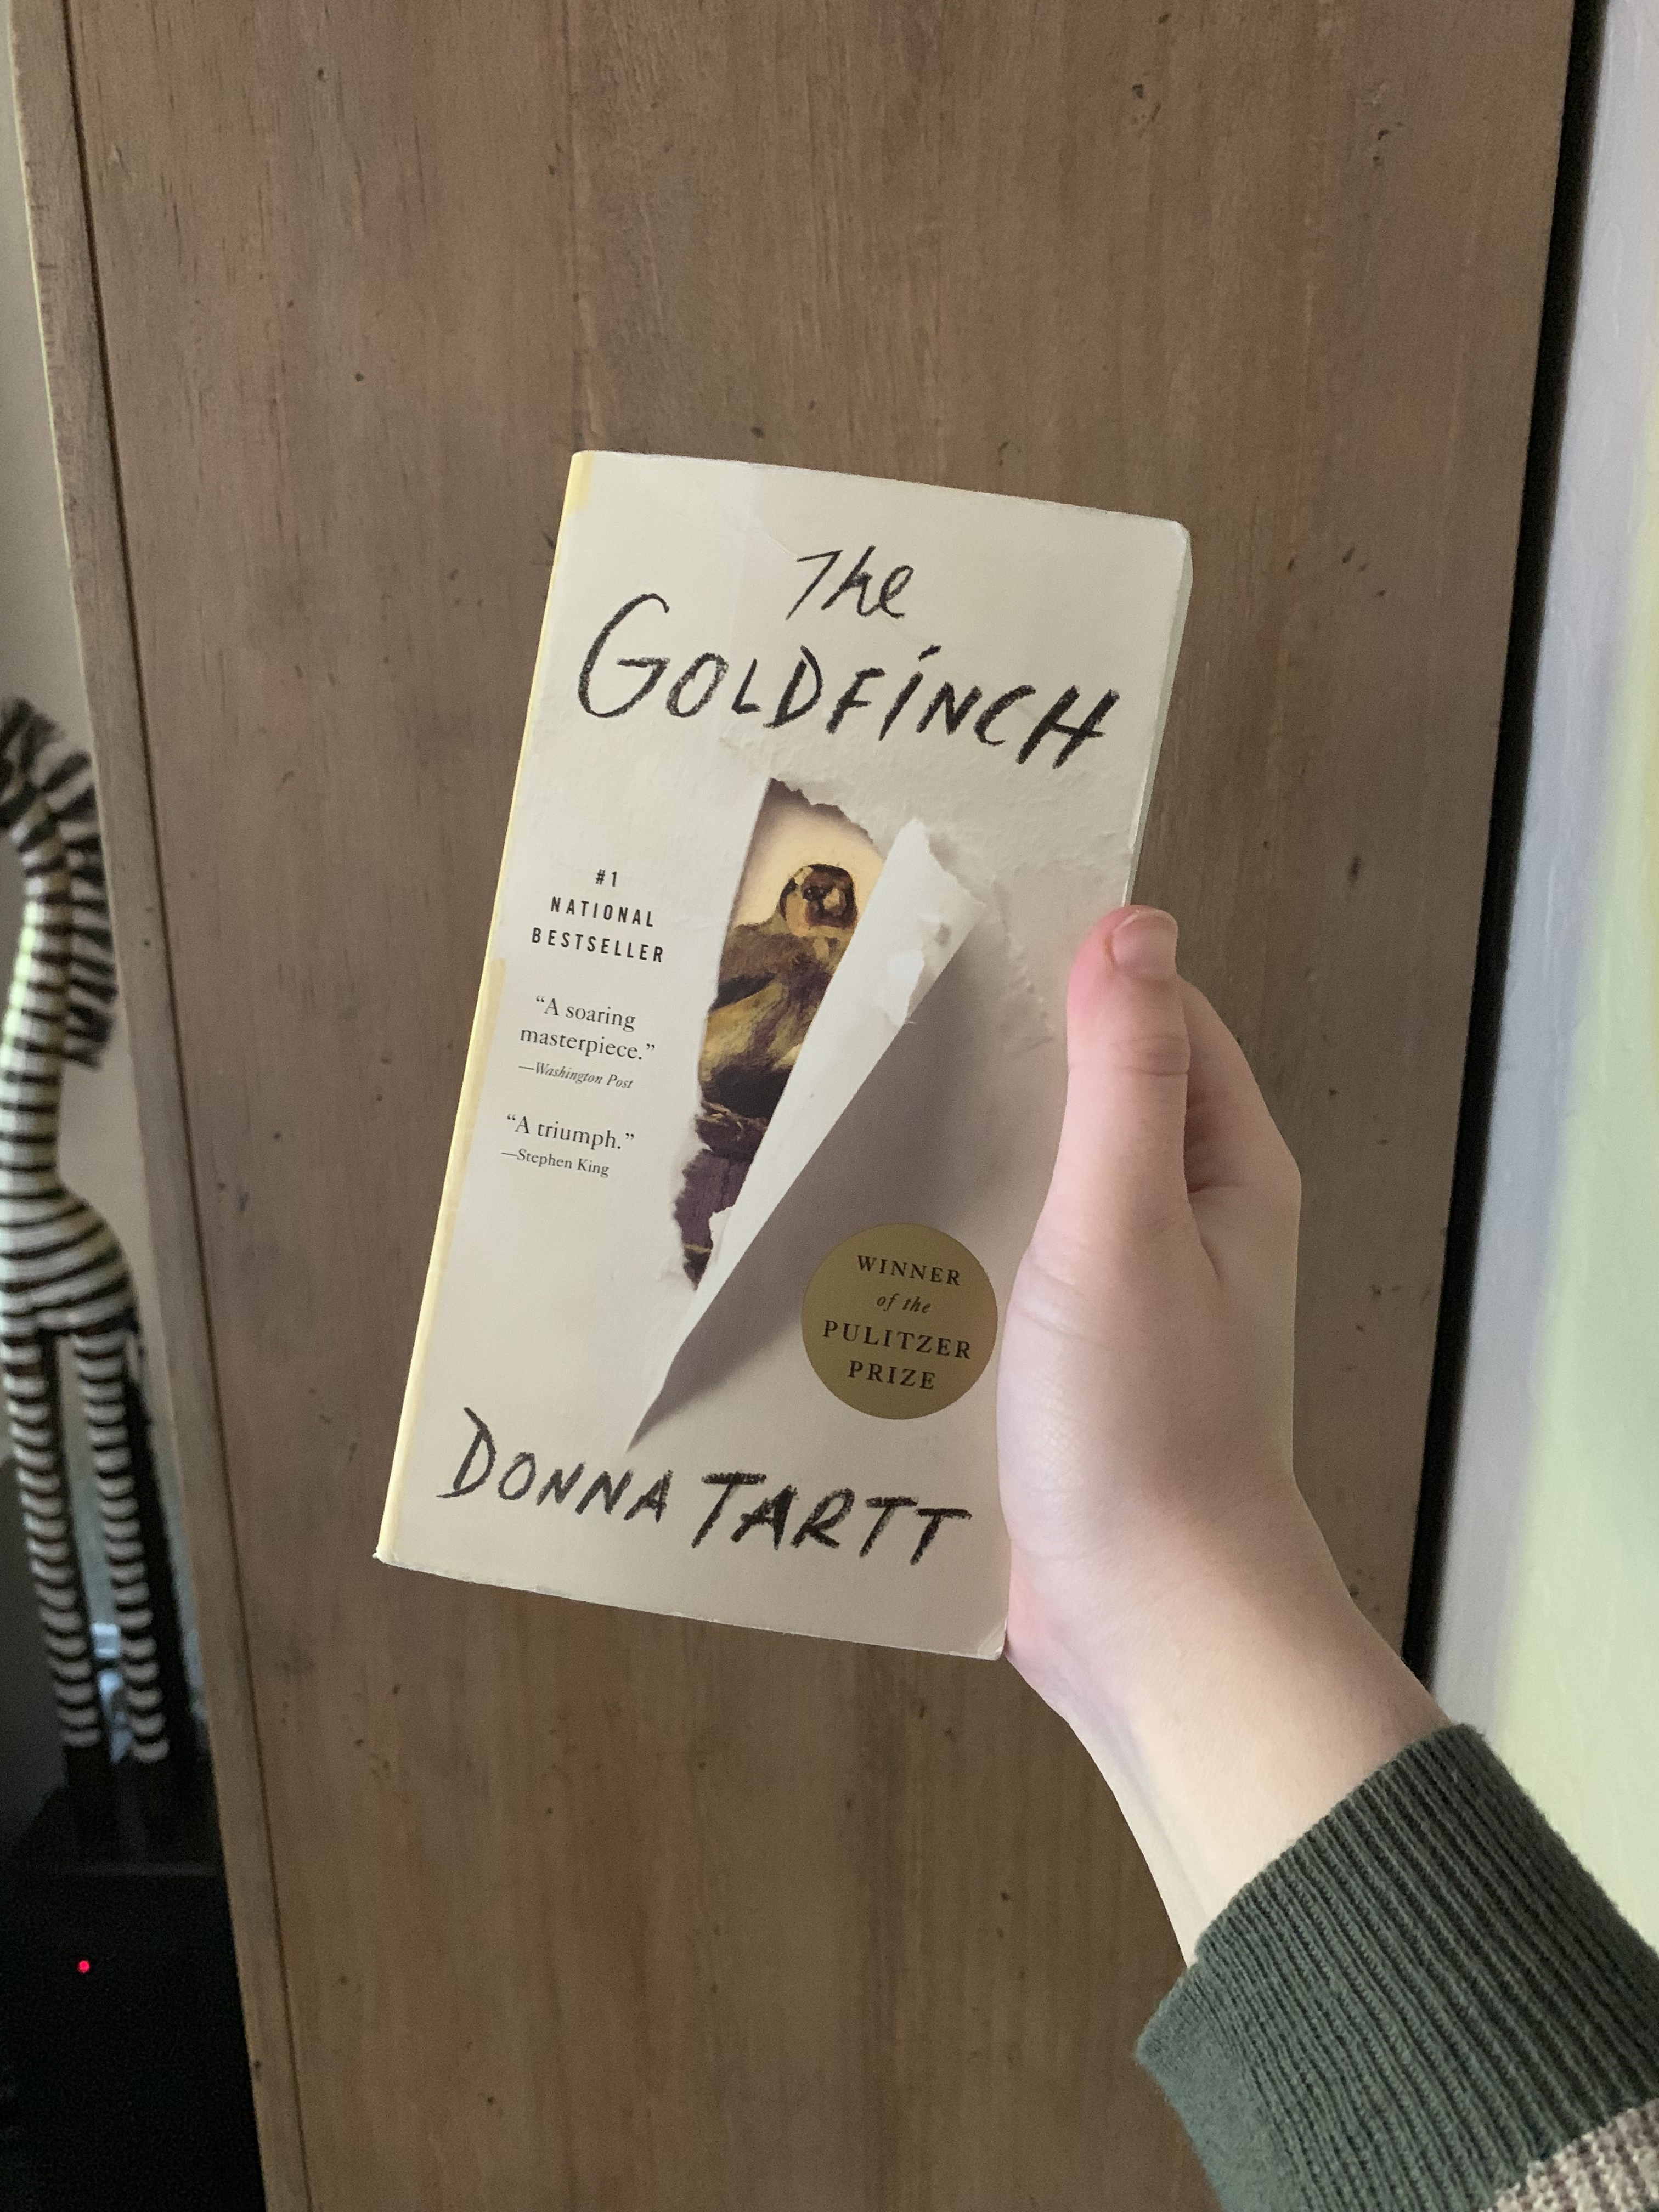 image of Donna Tartt's novel "The Goldfinch"